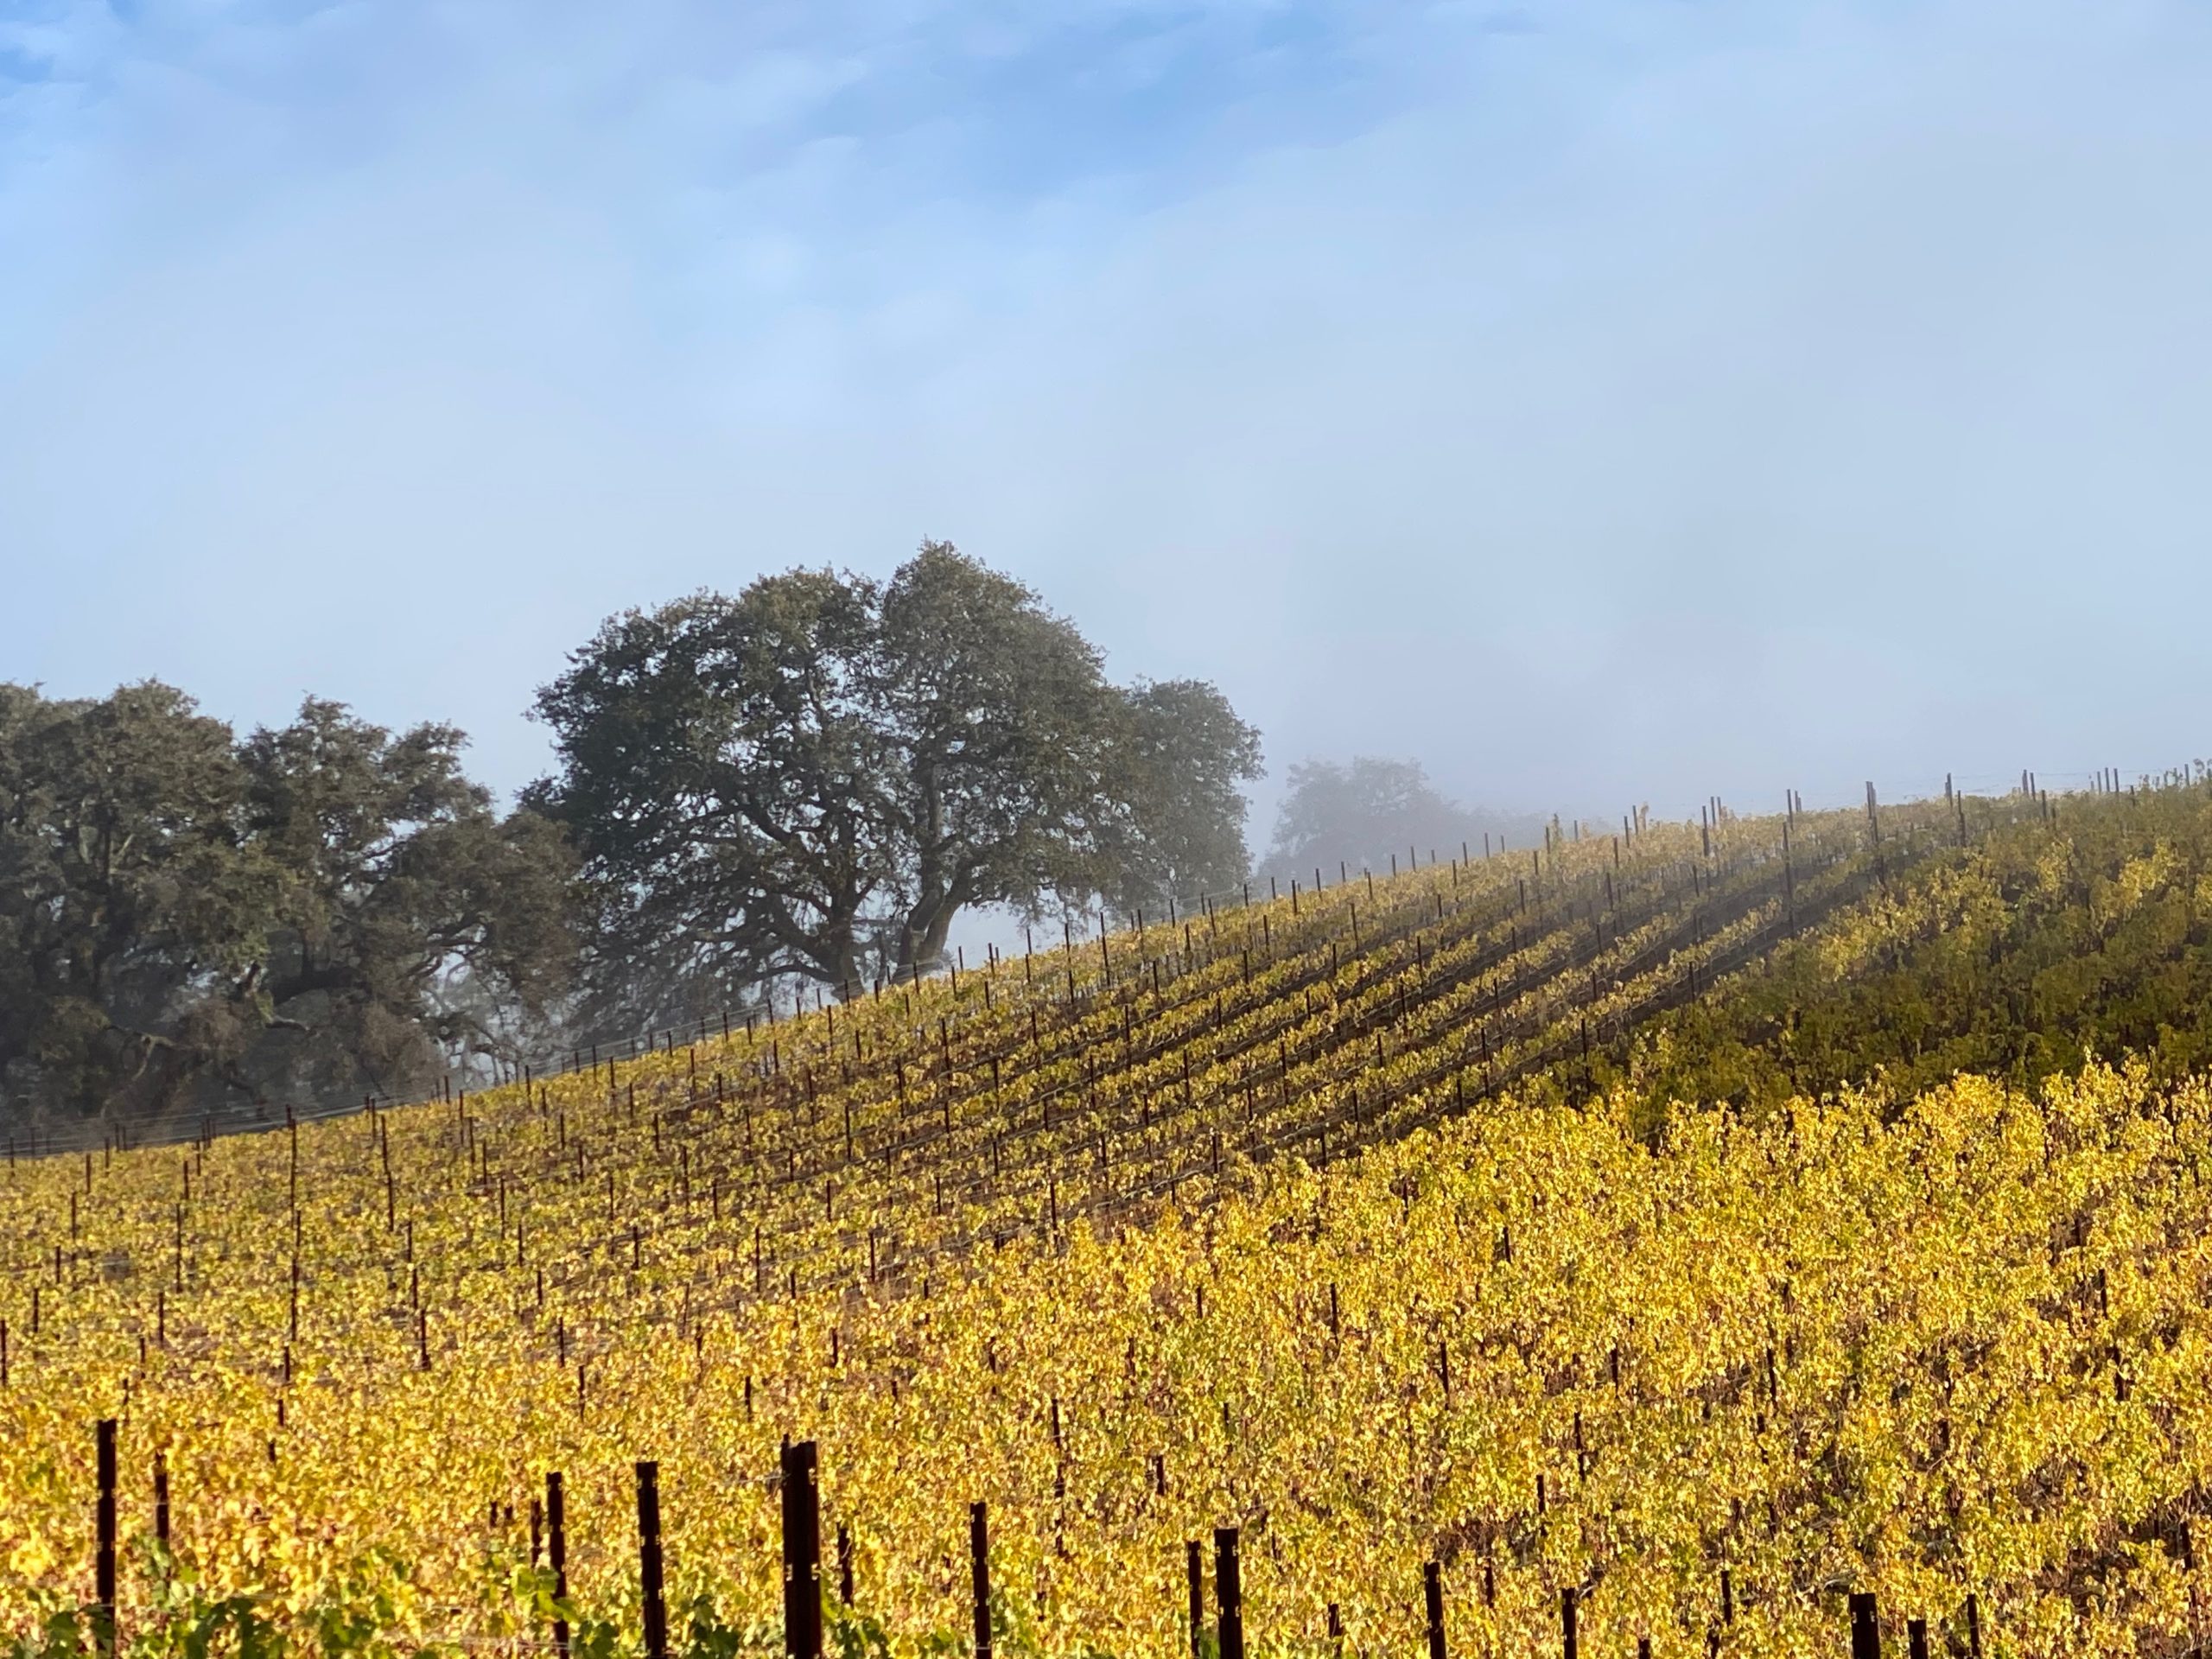 Sonoma vineyard in December